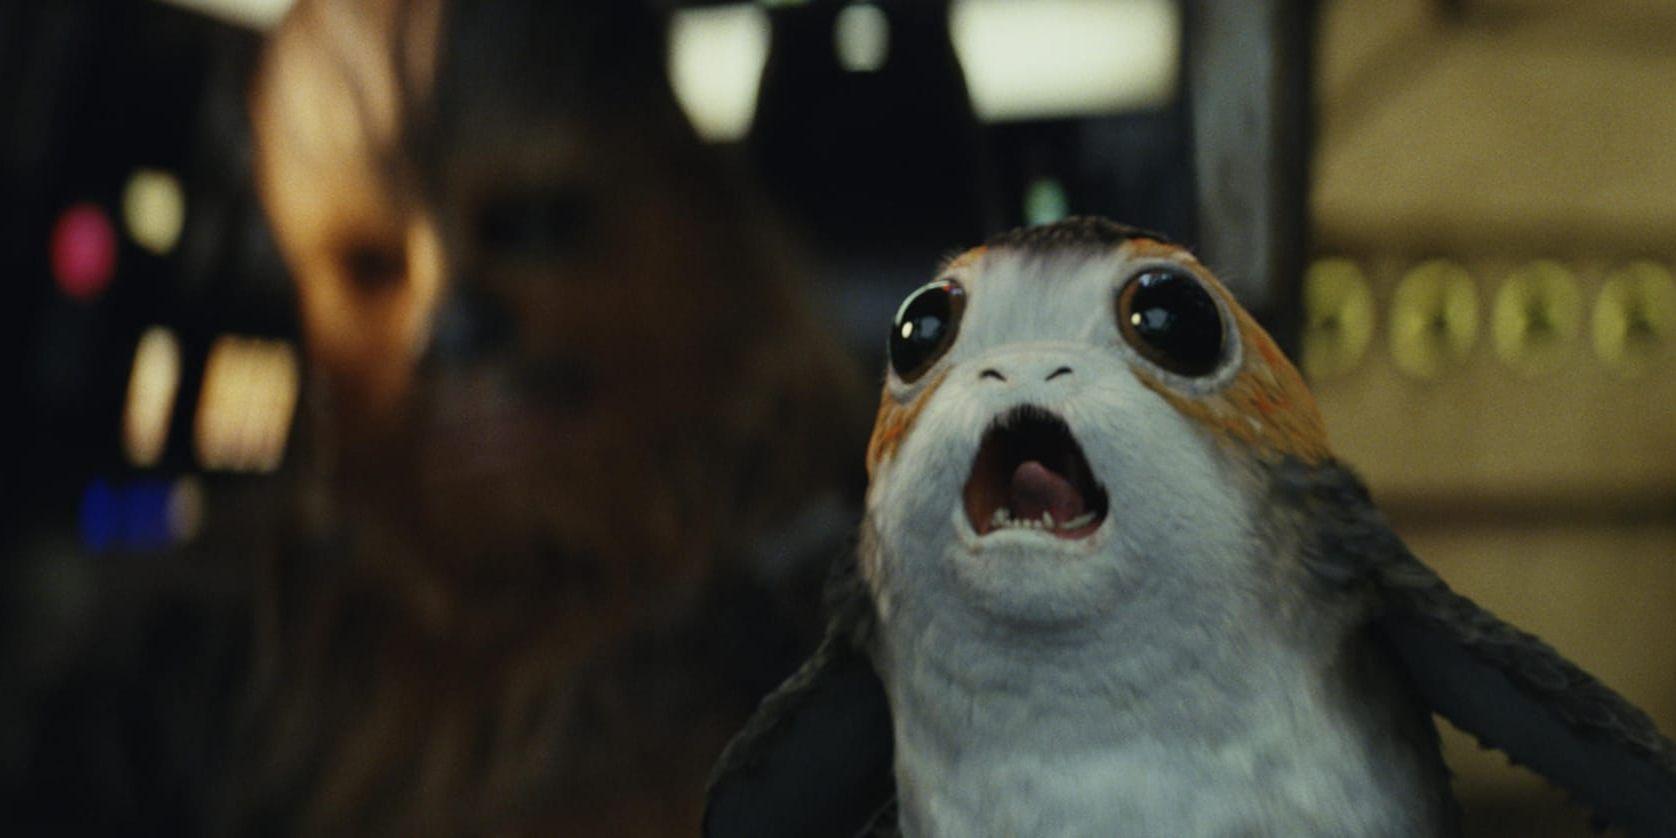 Han Solos "blaster", eller strålpistol, som skådespelaren Harrison Ford använde i "Star wars"-filmen "Jedins återkomst" såldes för nästan fem miljoner kronor. Arkivbild.